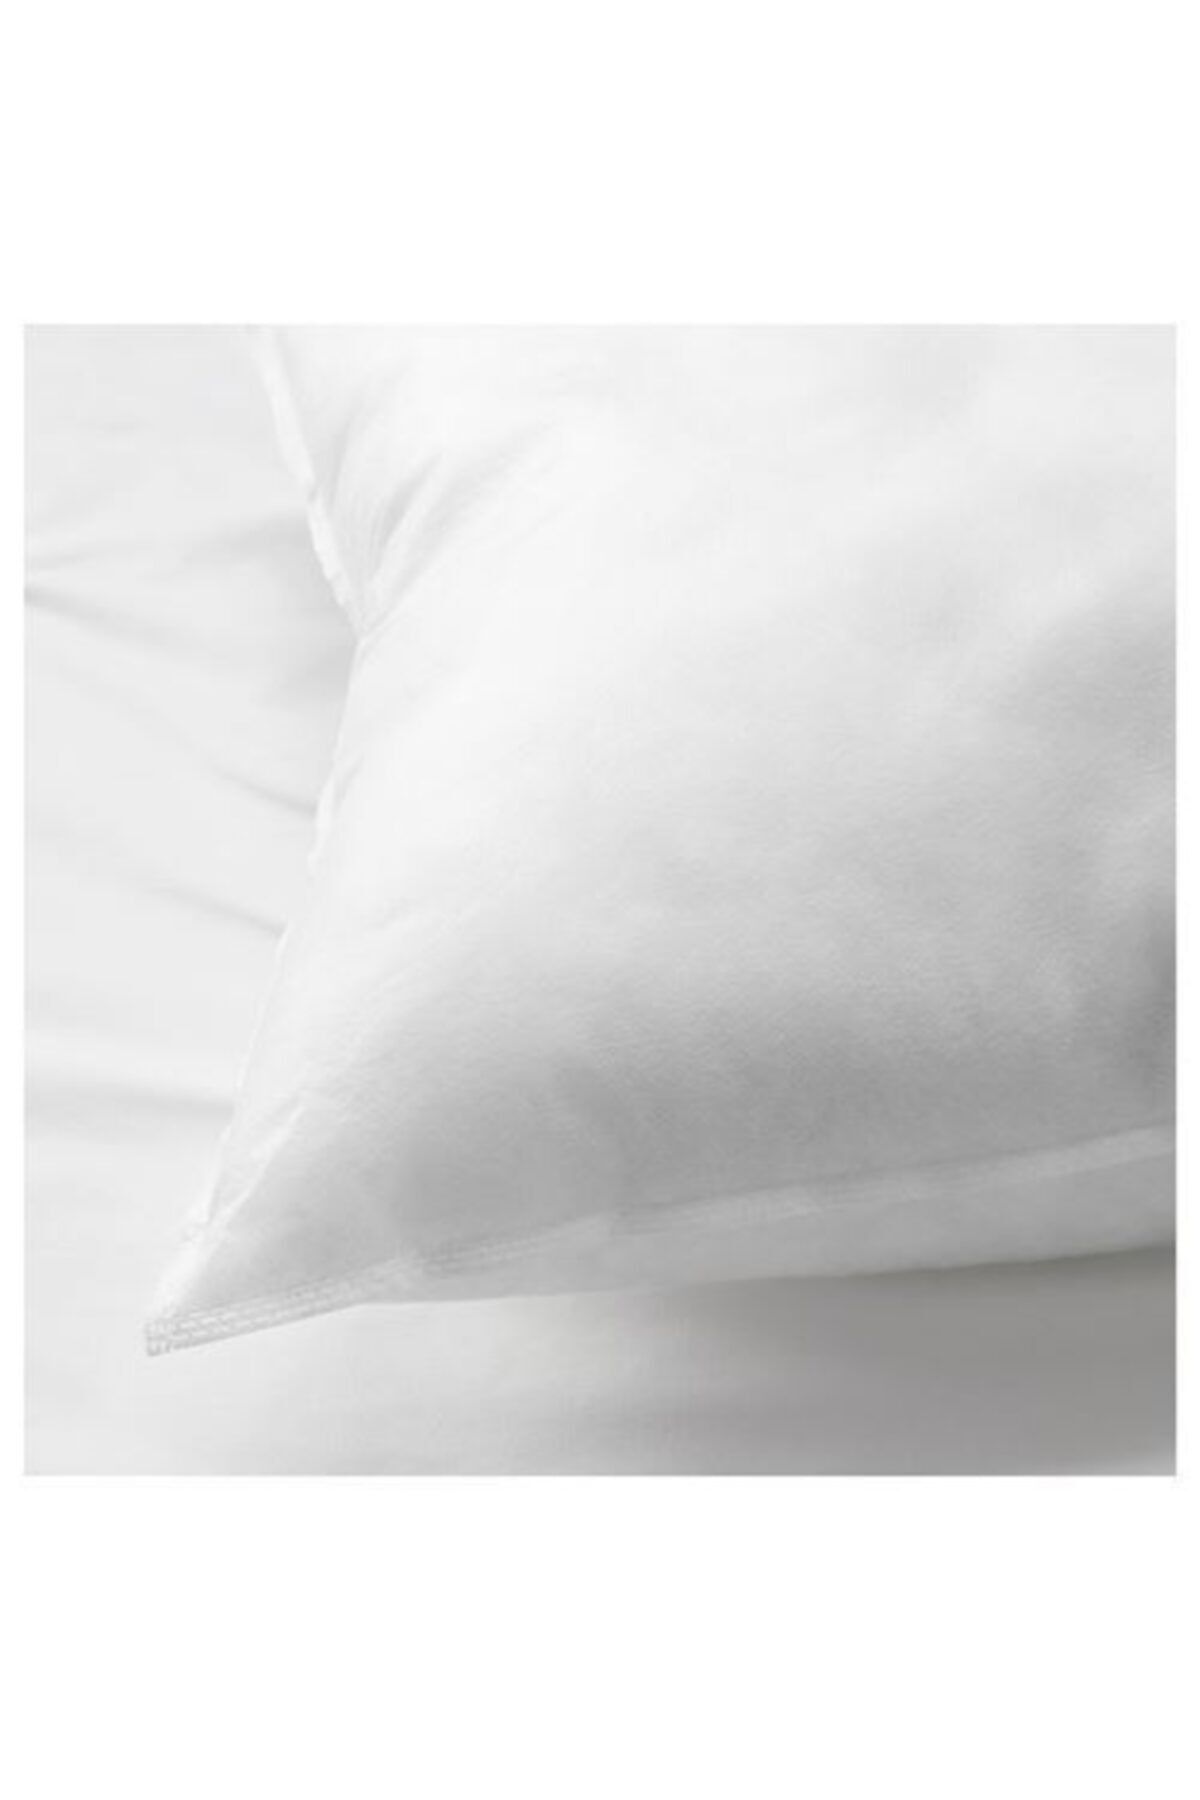 IKEA Sköldblad Yumuşak Yatak Yastık 50x60 Cm